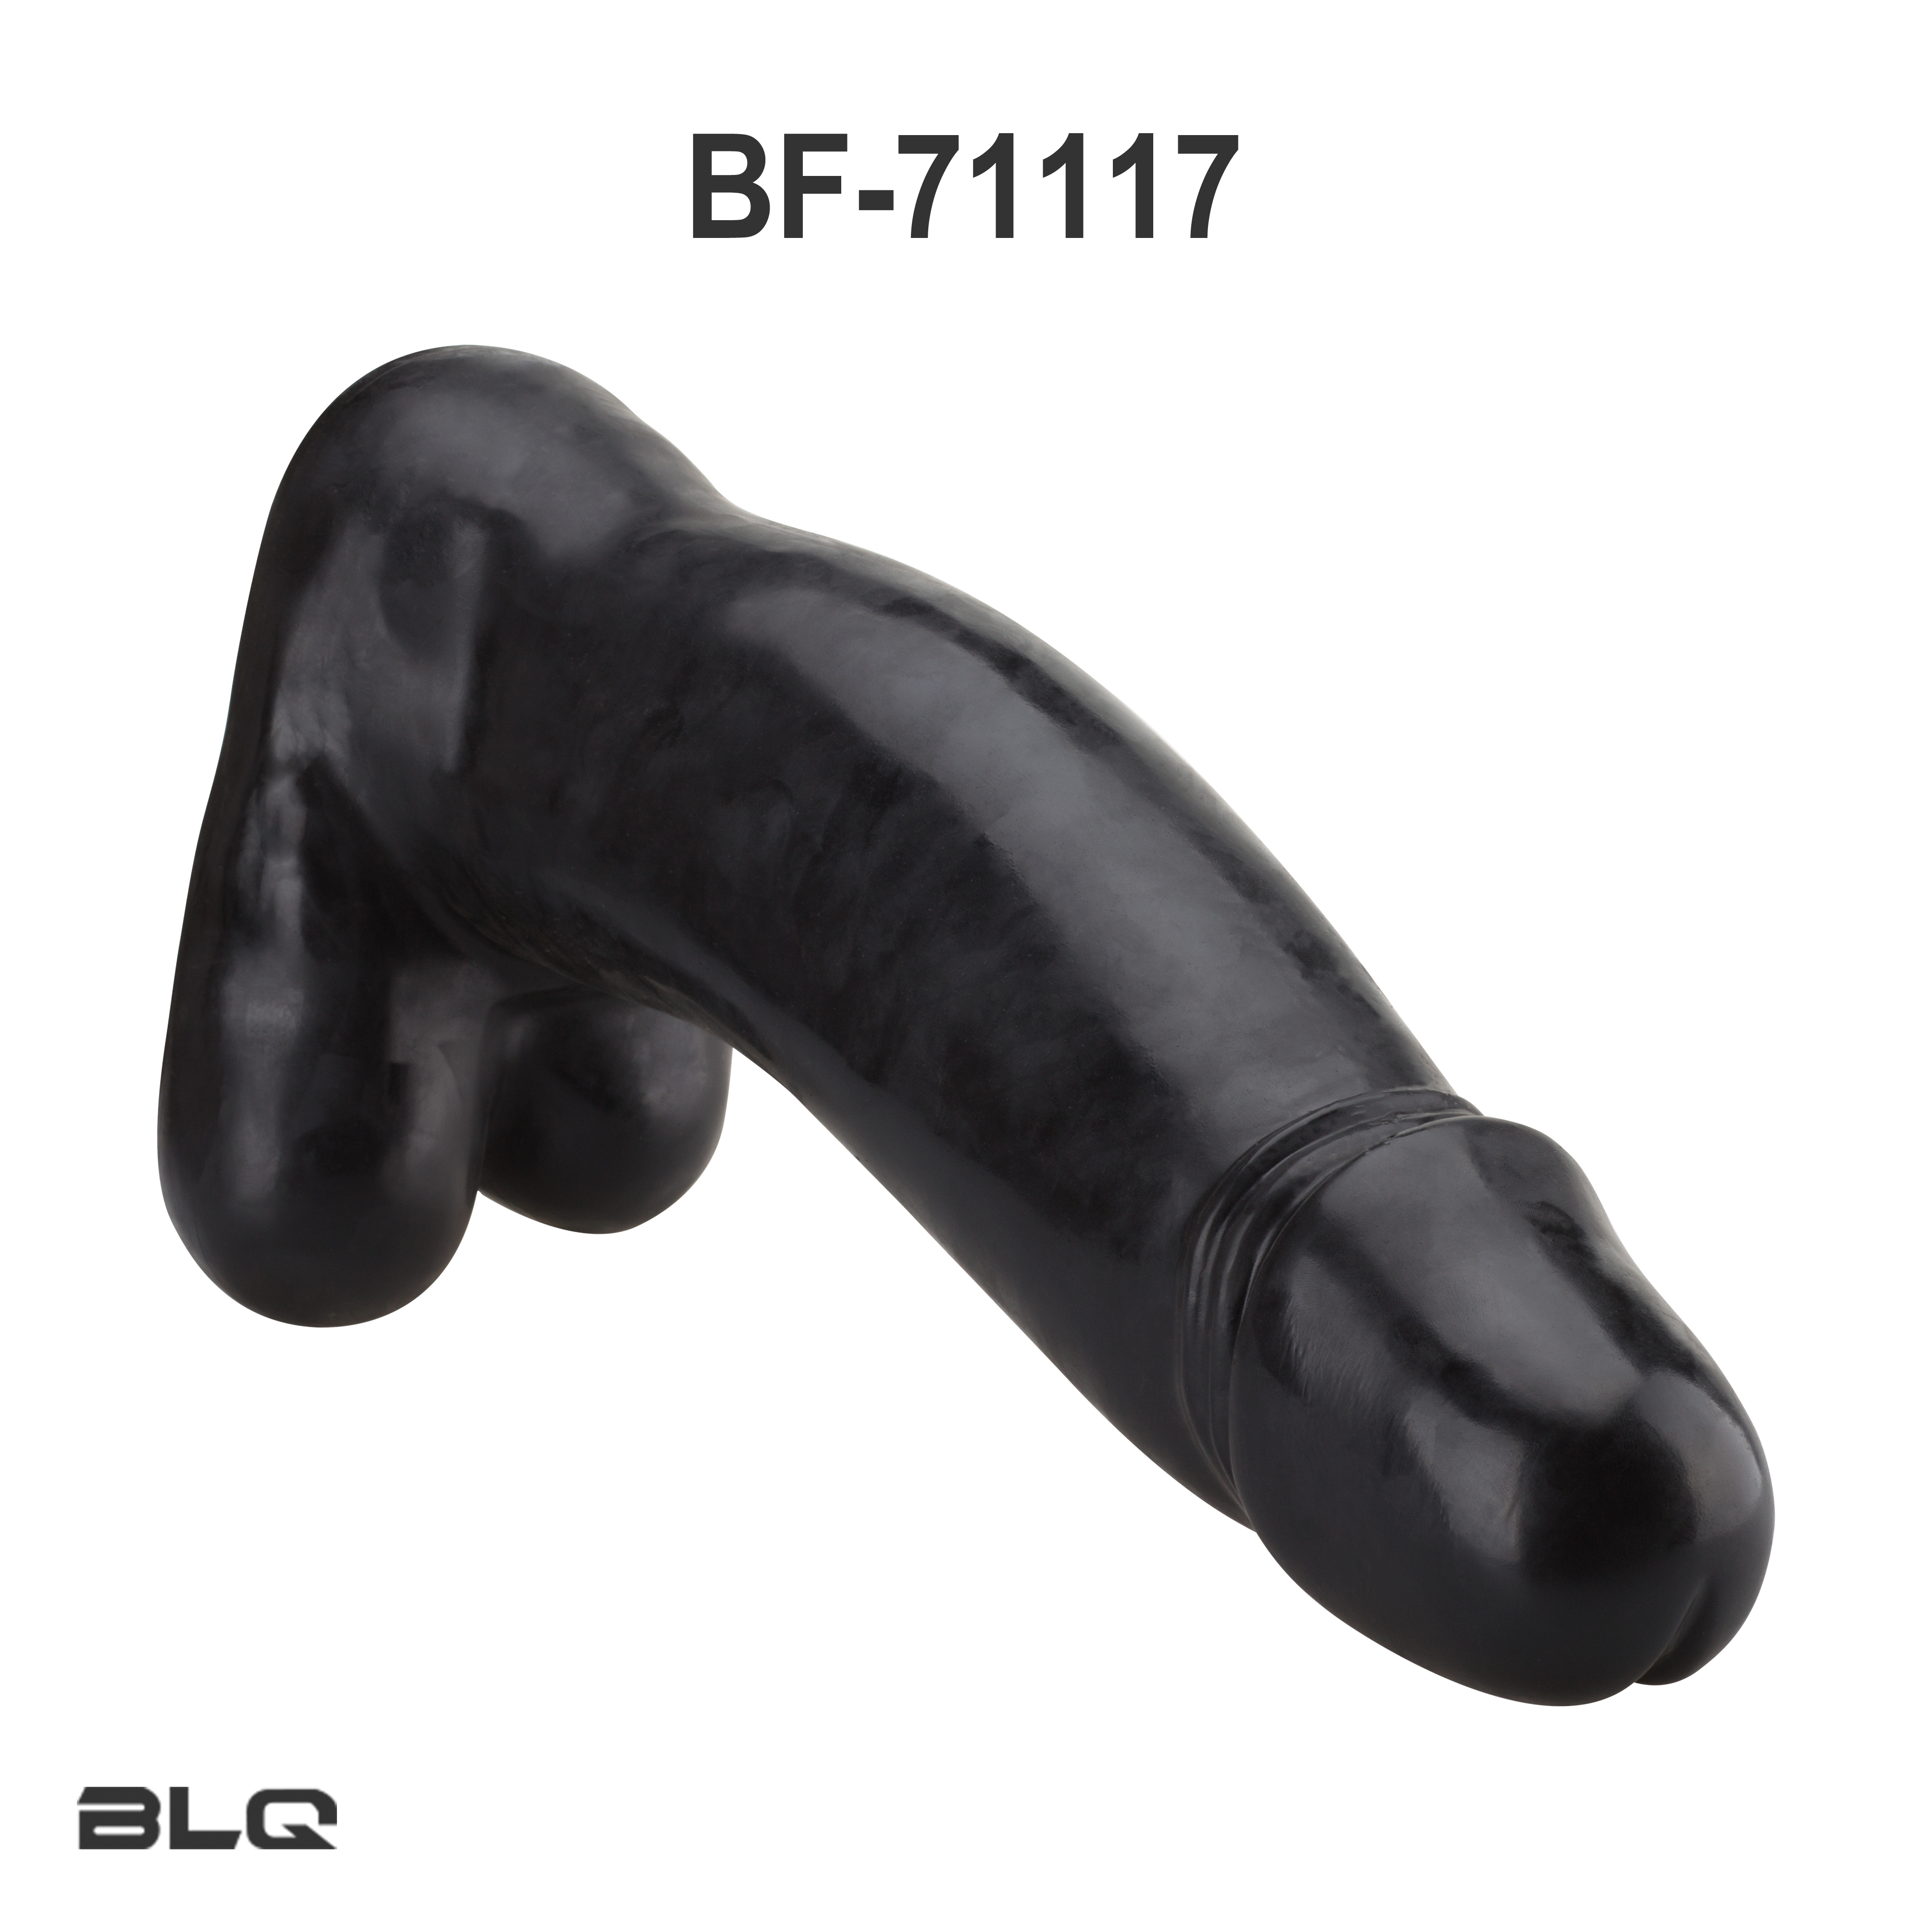 Jouets pour adultes pour Extreme King Size Sex Woman Toys Black Dildo